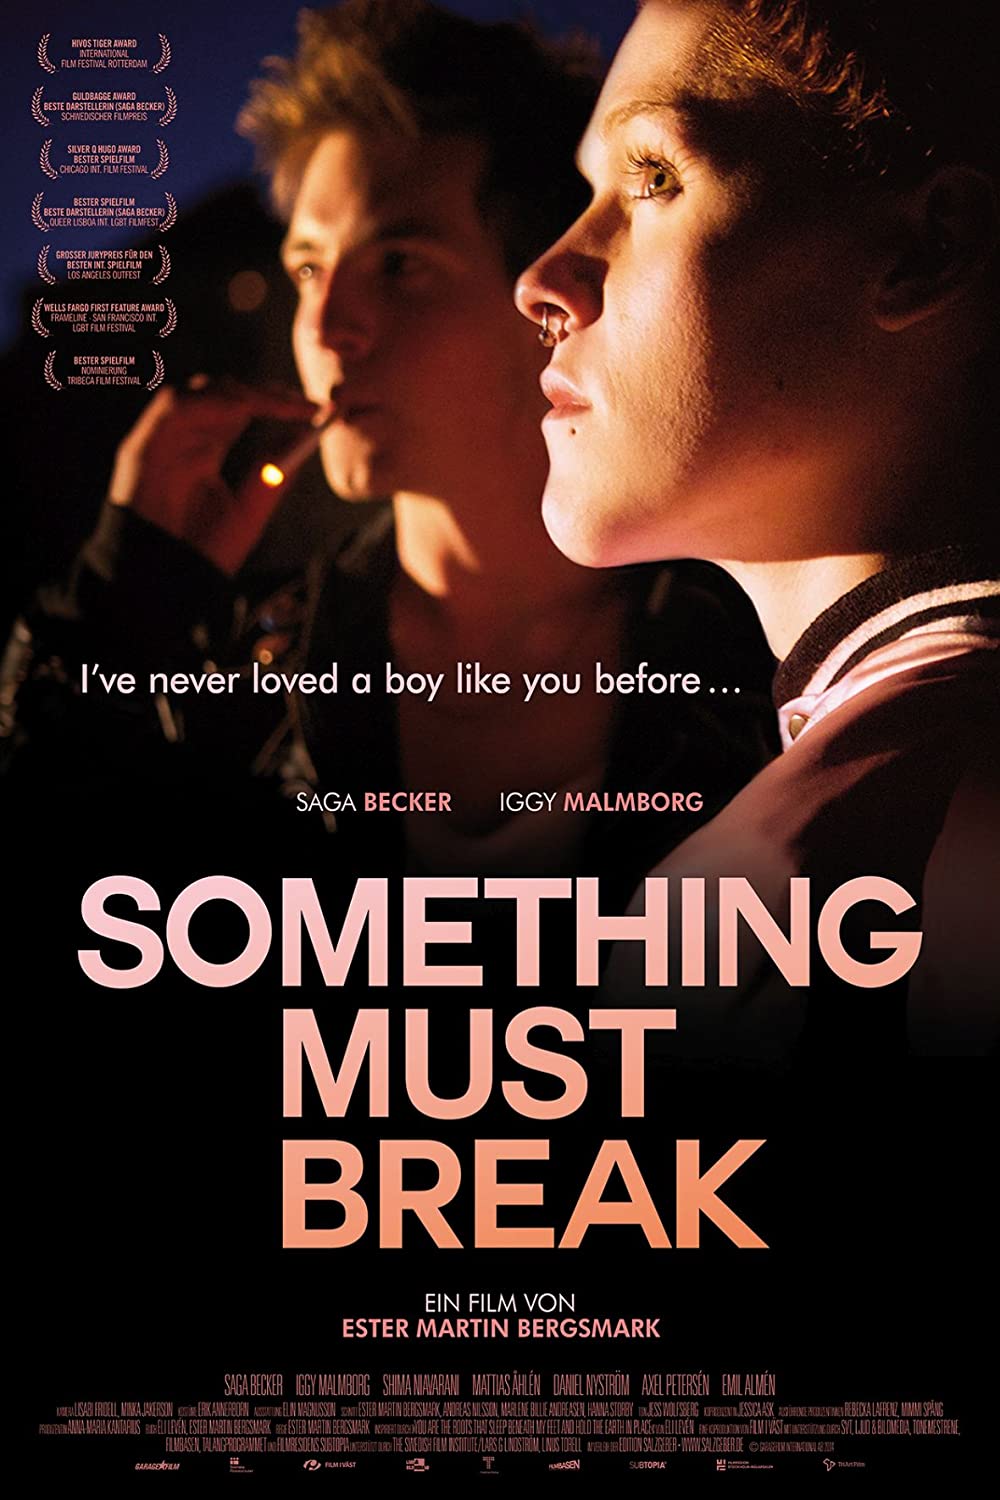 Filmbeschreibung zu Something Must Break